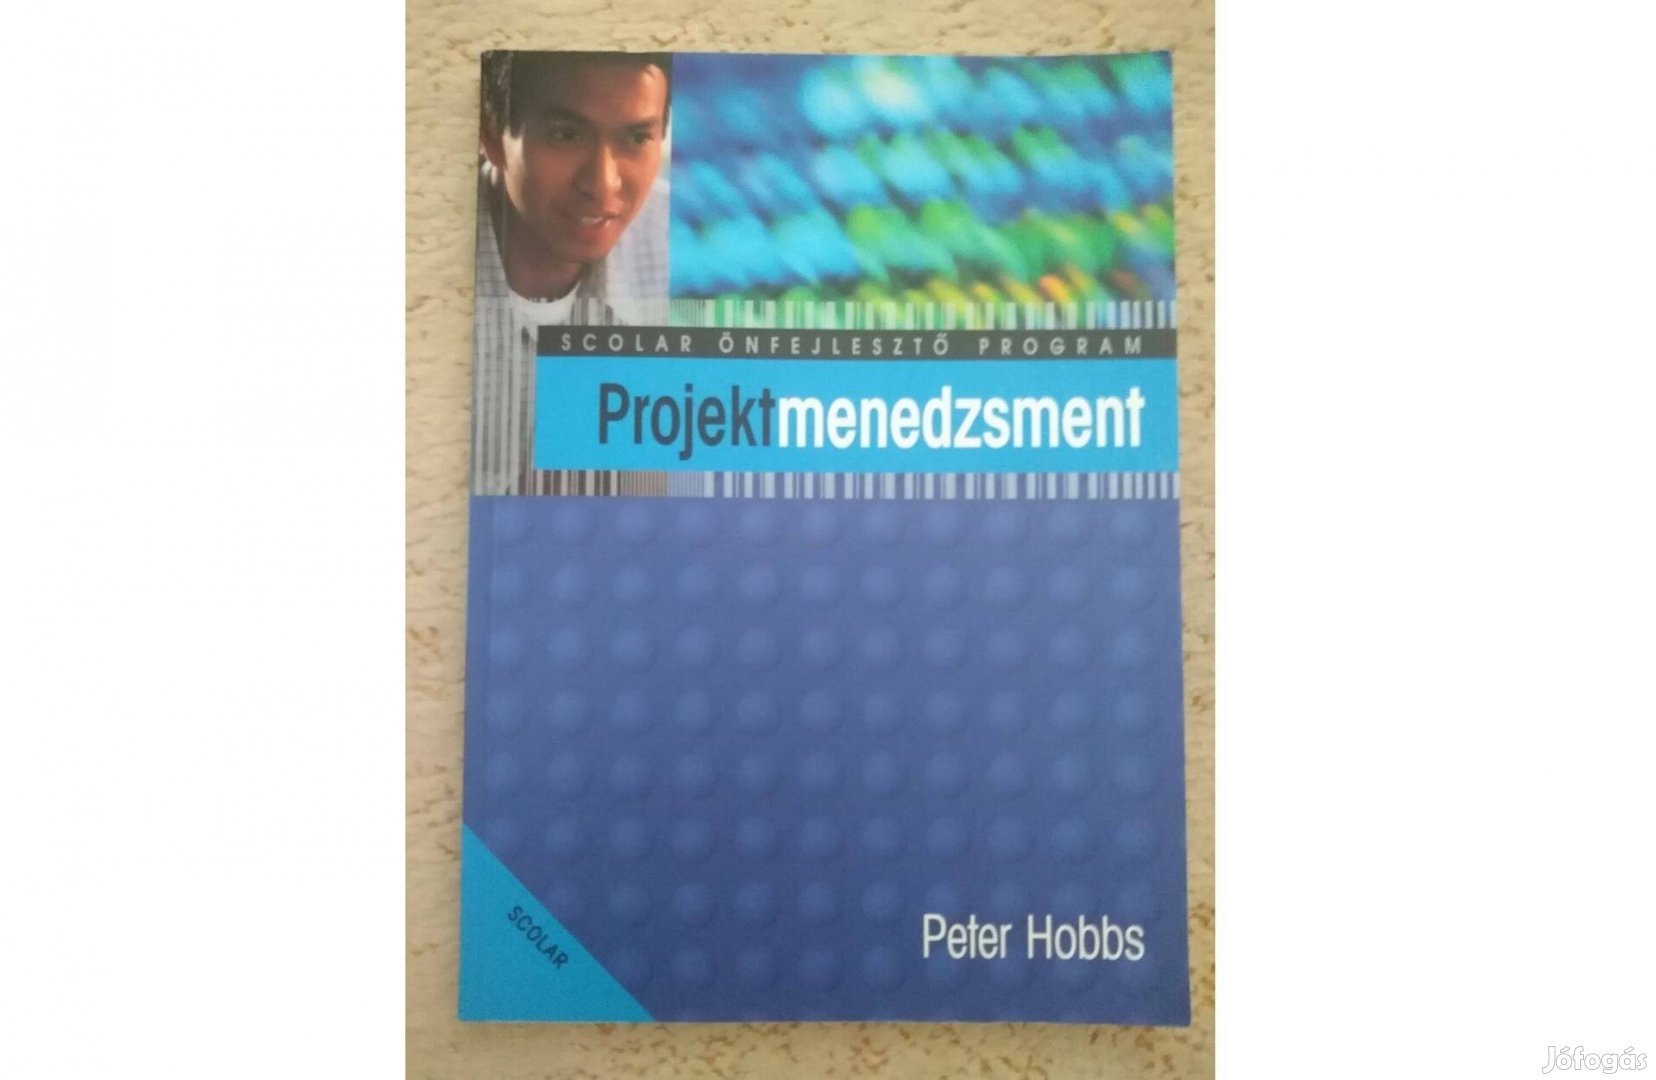 Peter Hobbs: Projektmenedzsment - Scolar önfejlesztő program könyv